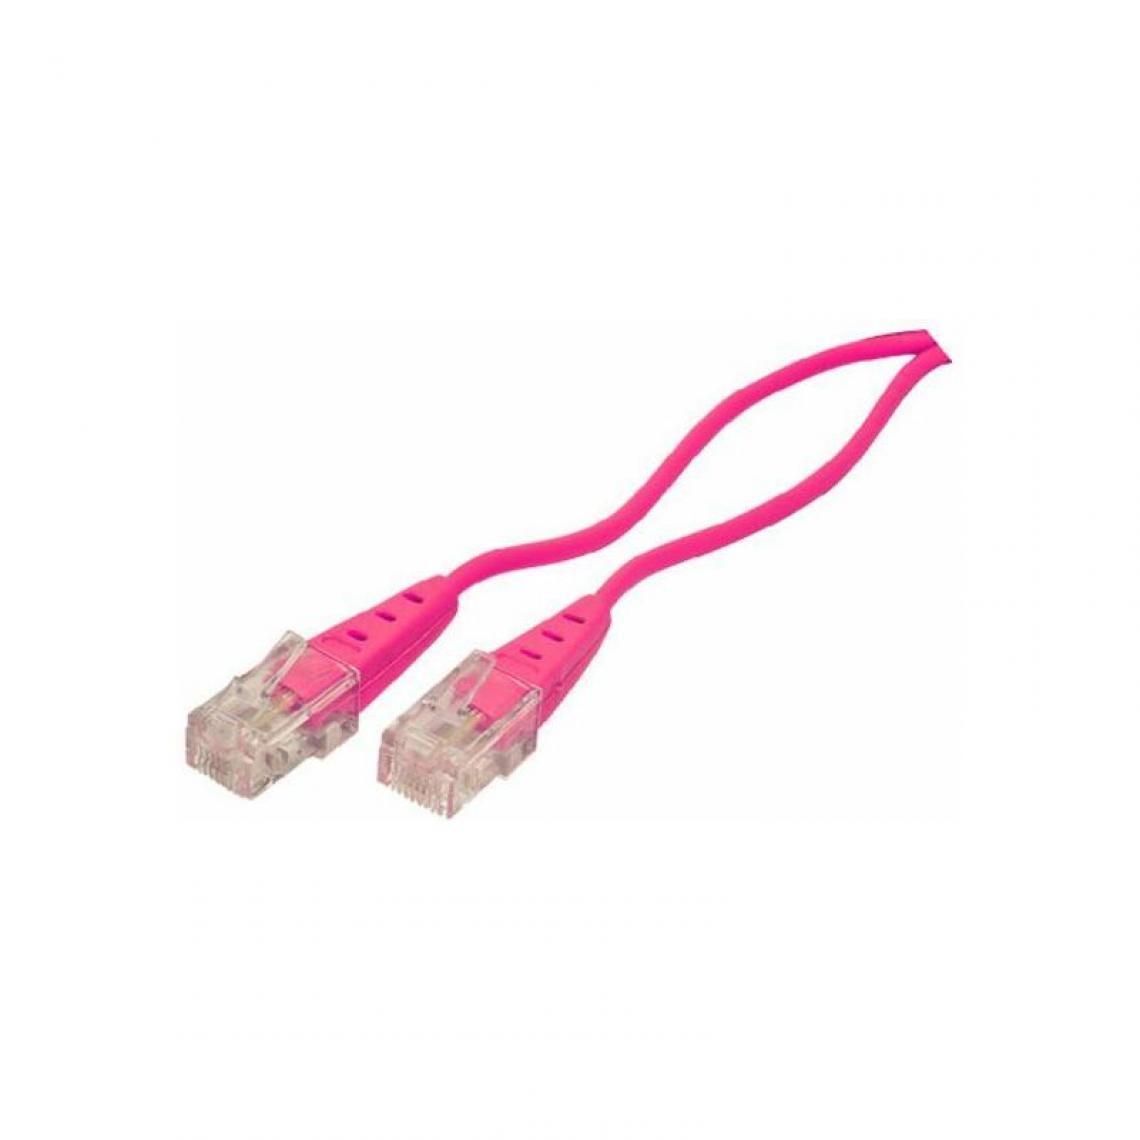 shiverpeaks - shiverpeaks BASIC-S Câble de connexion RNIS, magenta, 1,0 m () - Accessoires Téléphone Fixe